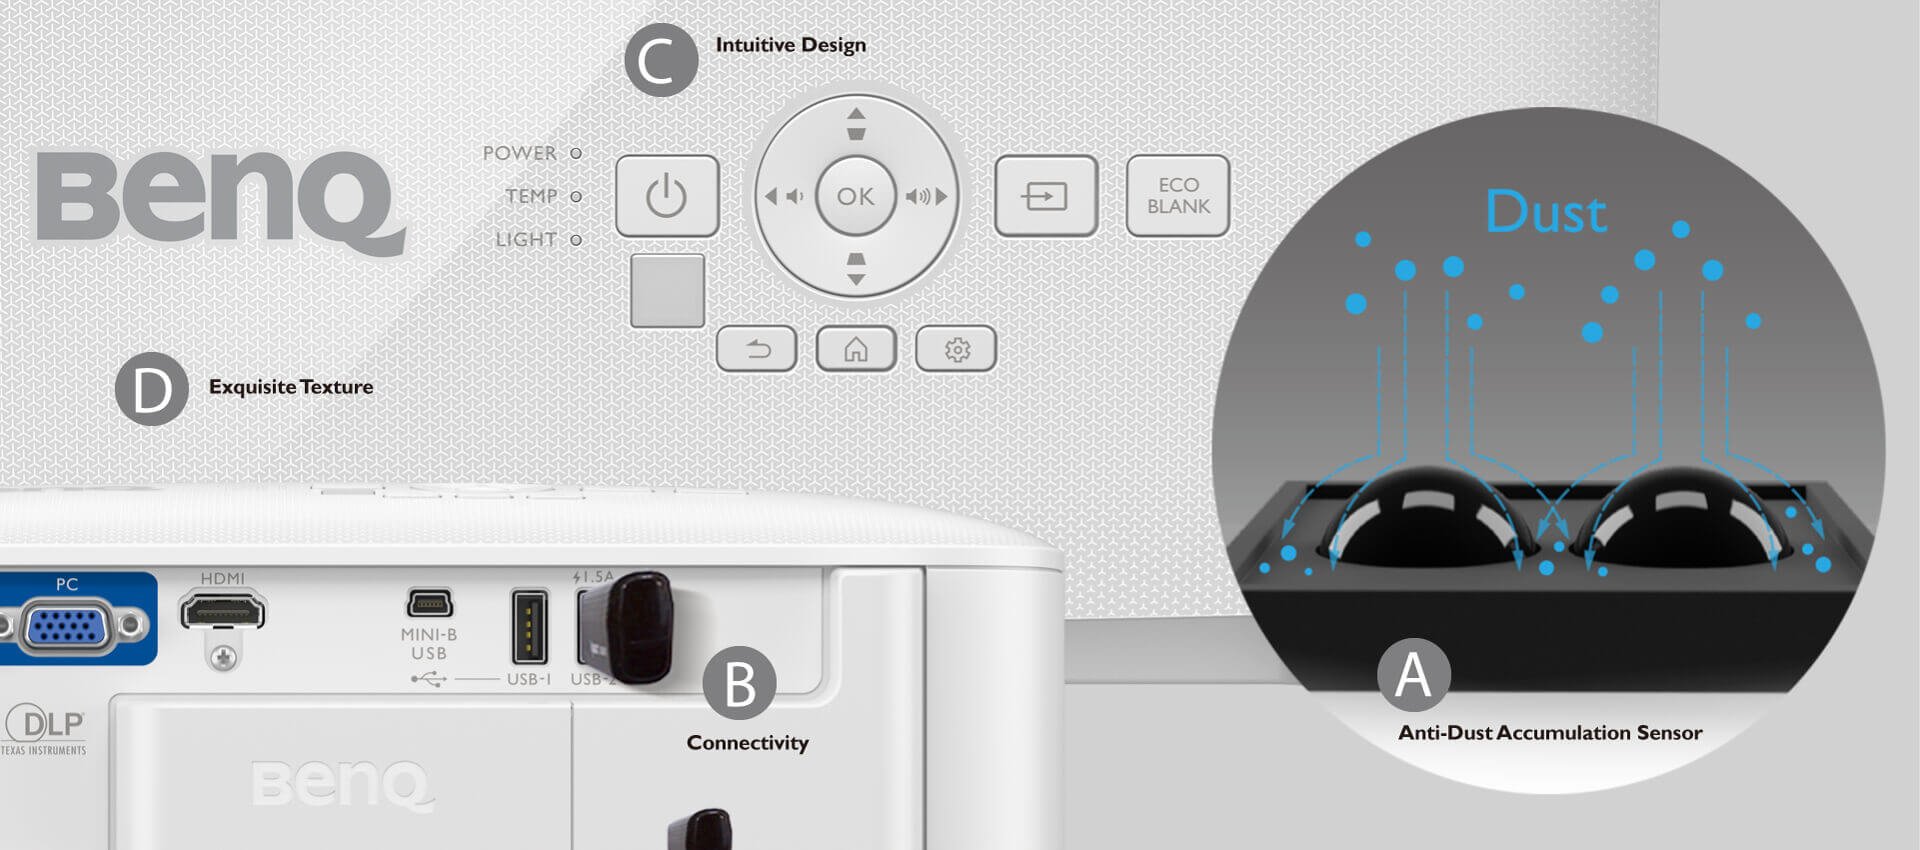 Detalhes projetor smart BenQ